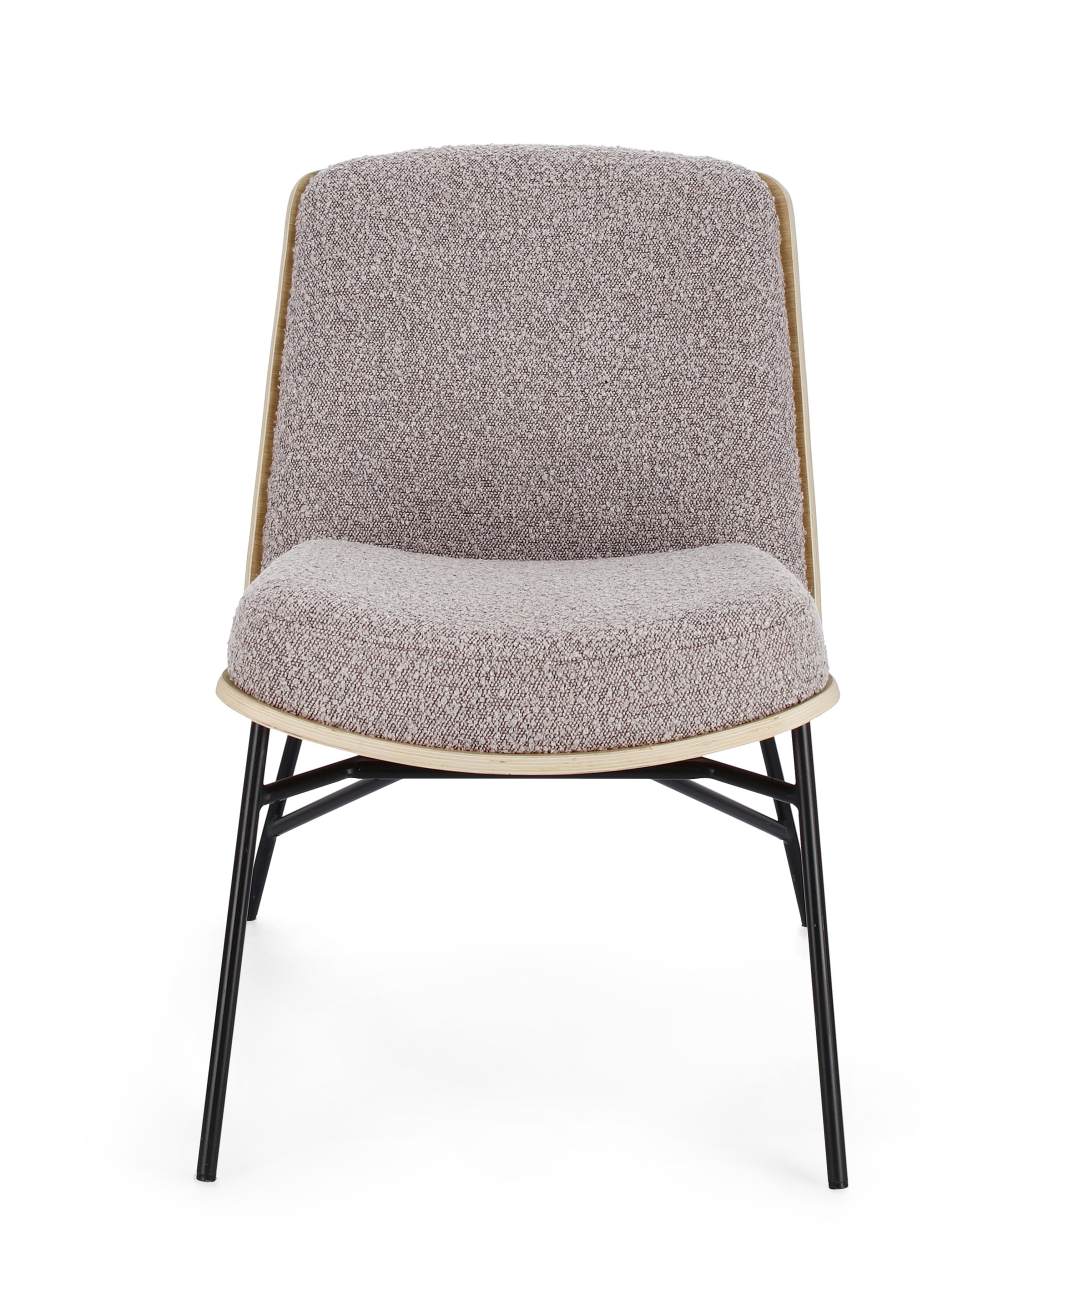 Der Sessel Emmerson überzeugt mit seinem modernen Stil. Gefertigt wurde er aus Boucle-Stoff, welcher einen braunen Farbton besitzt. Das Gestell ist aus Metall und hat eine schwarze Farbe. Der Sessel besitzt eine Sitzhöhe von 46 cm.